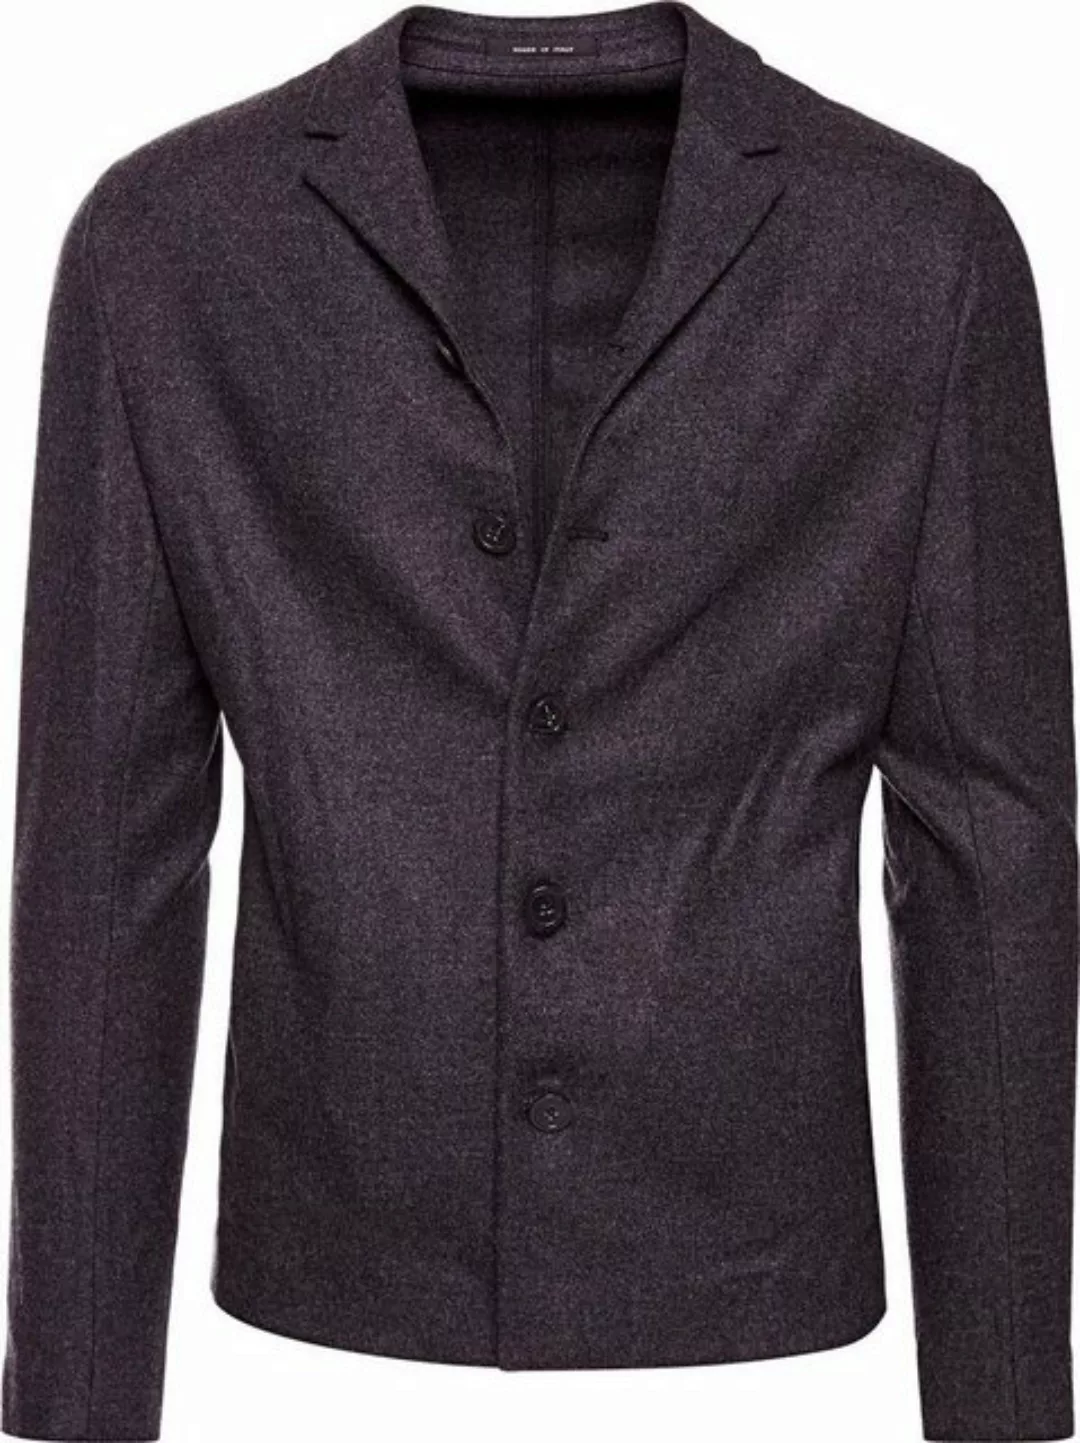 Emporio Armani Sakko Emporio Armani Sakko Anzug Sakko Blazer Jacke NEU Gr. günstig online kaufen